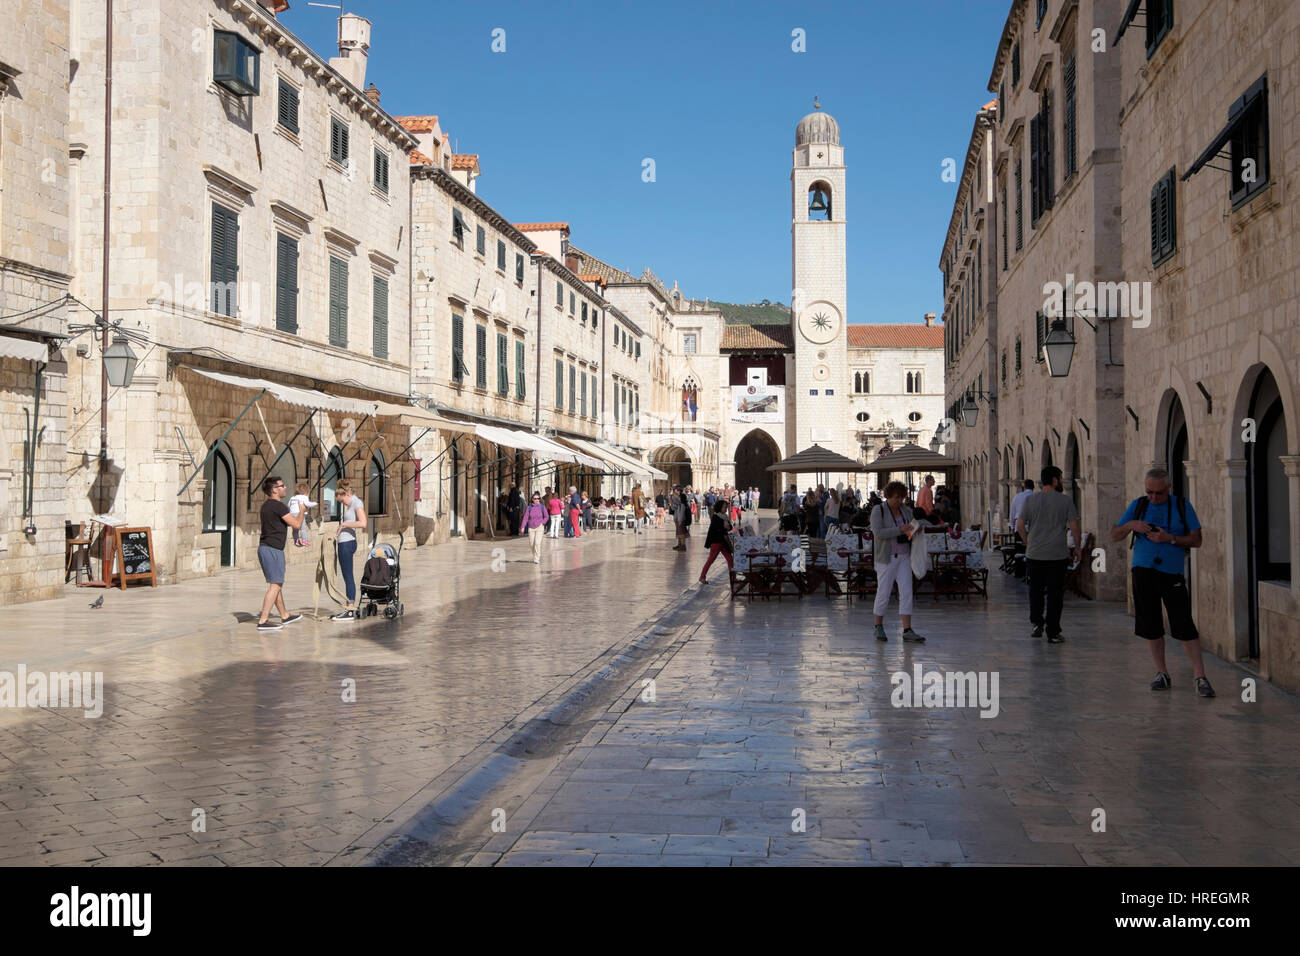 Le clocher, la place Luza, Placa (Stradun), Dubrovnik, Croatie. Banque D'Images